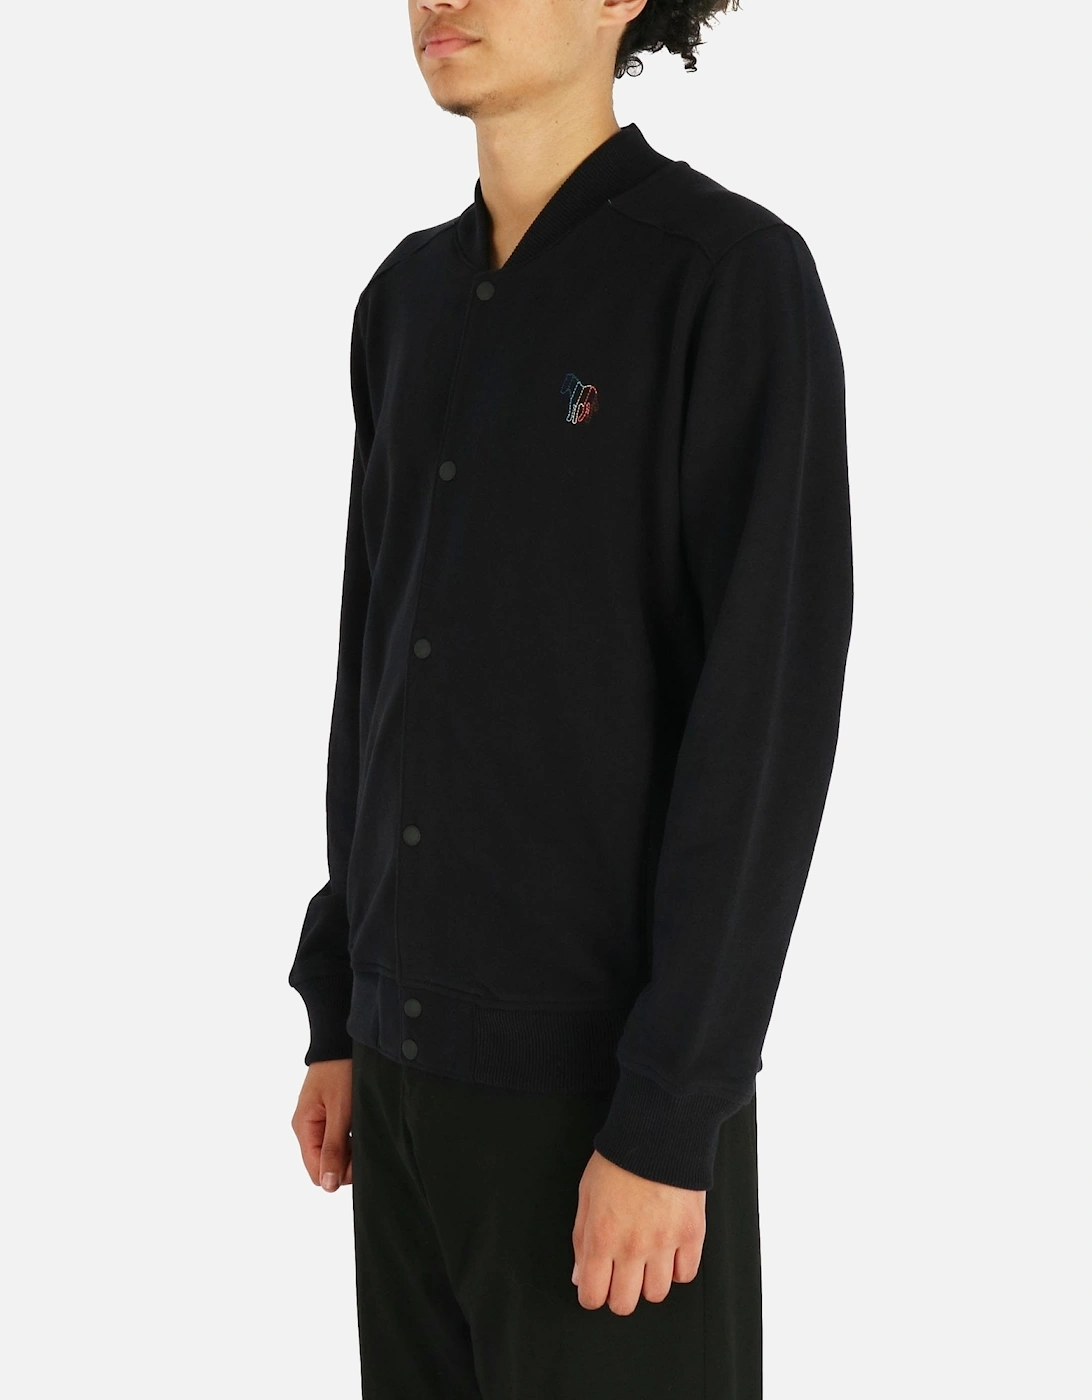 Embroidered Zebra Button Bomber Black Sweatshirt